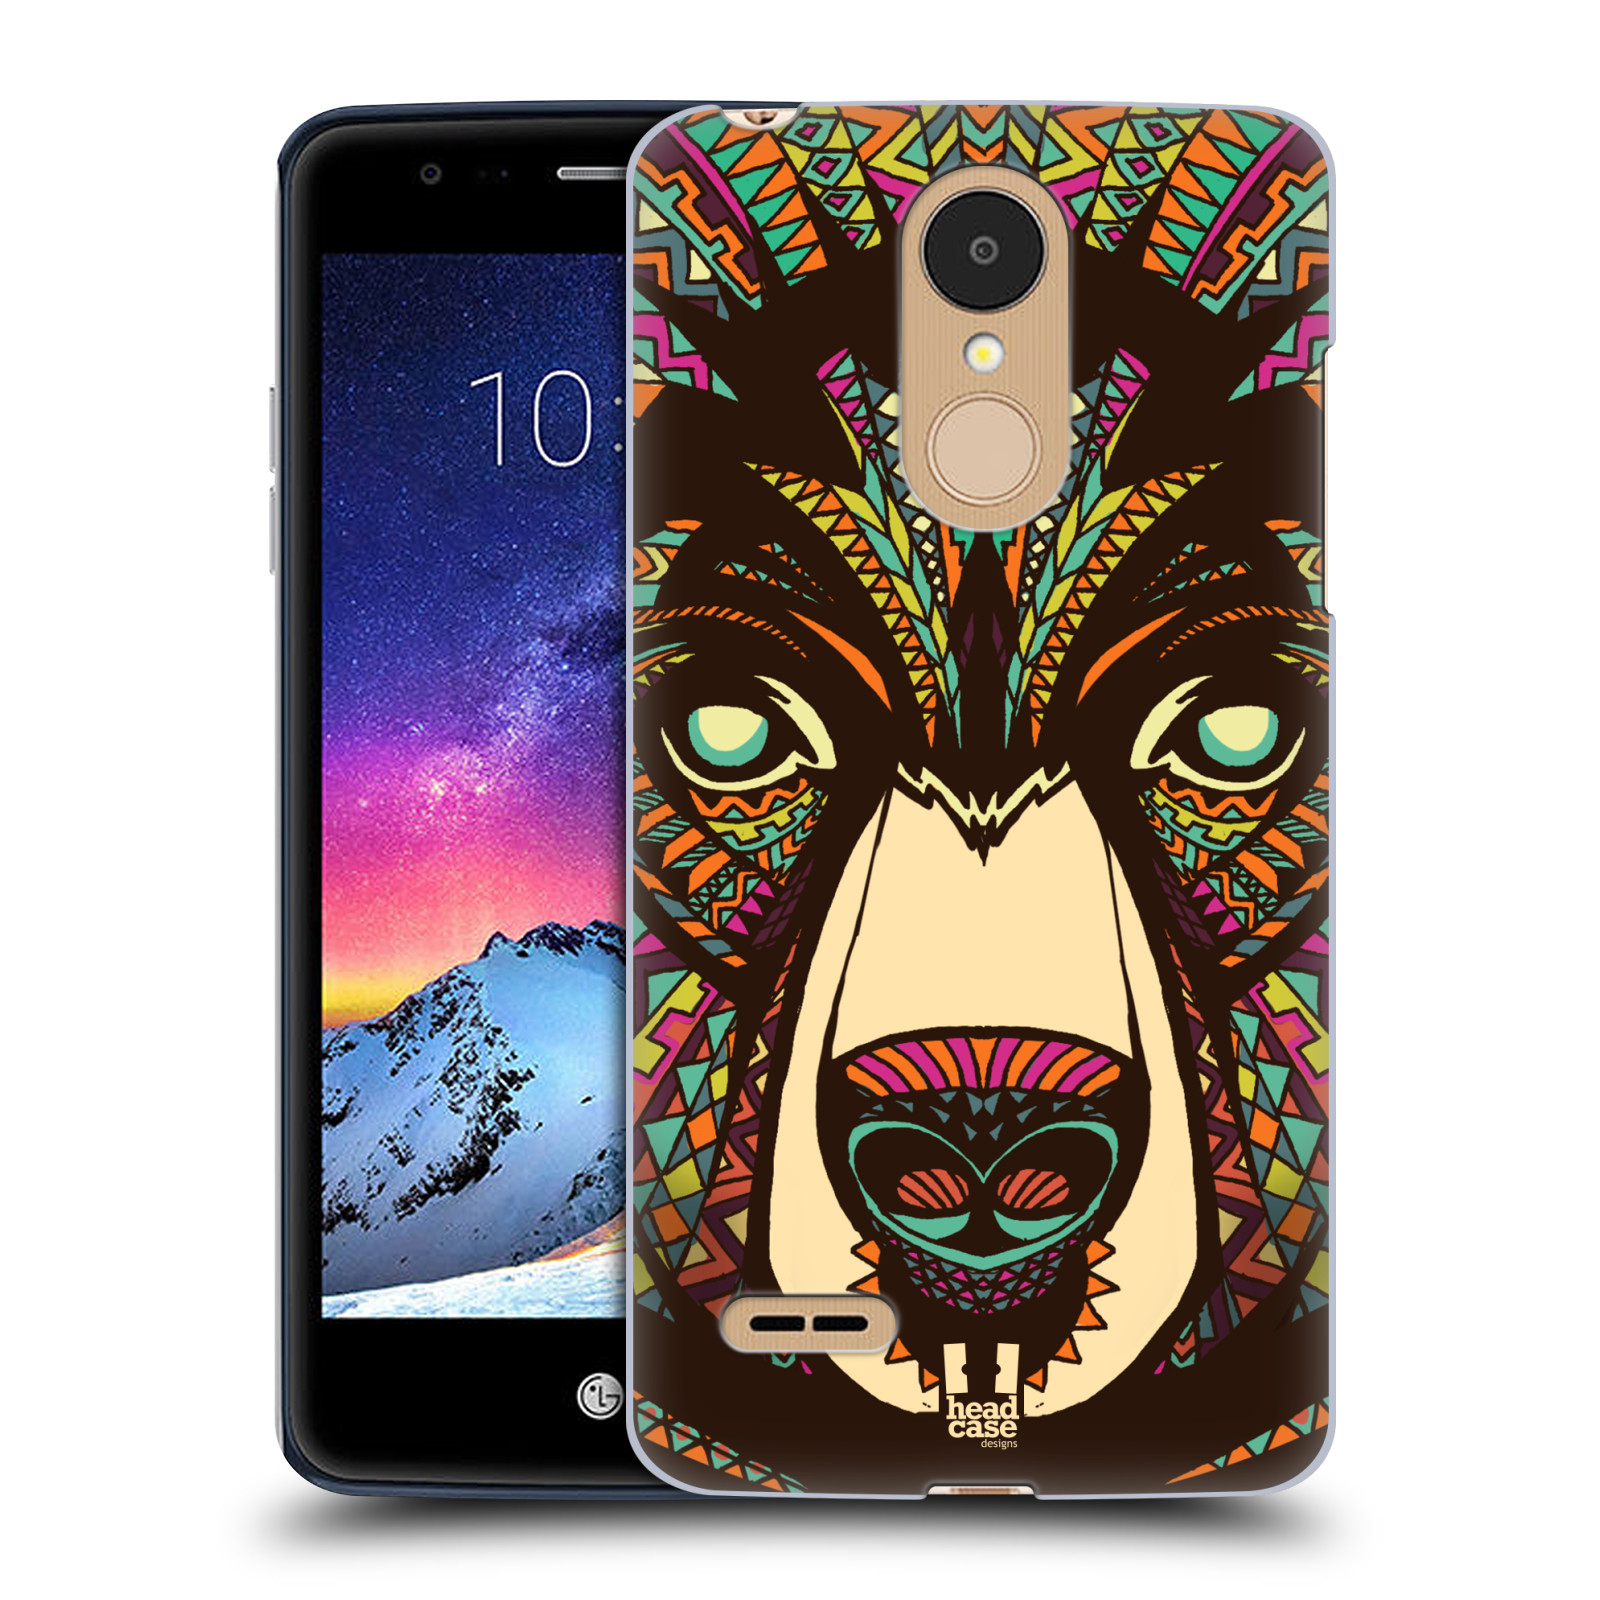 HEAD CASE plastový obal na mobil LG K9 / K8 2018 vzor Aztécký motiv zvíře medvěd